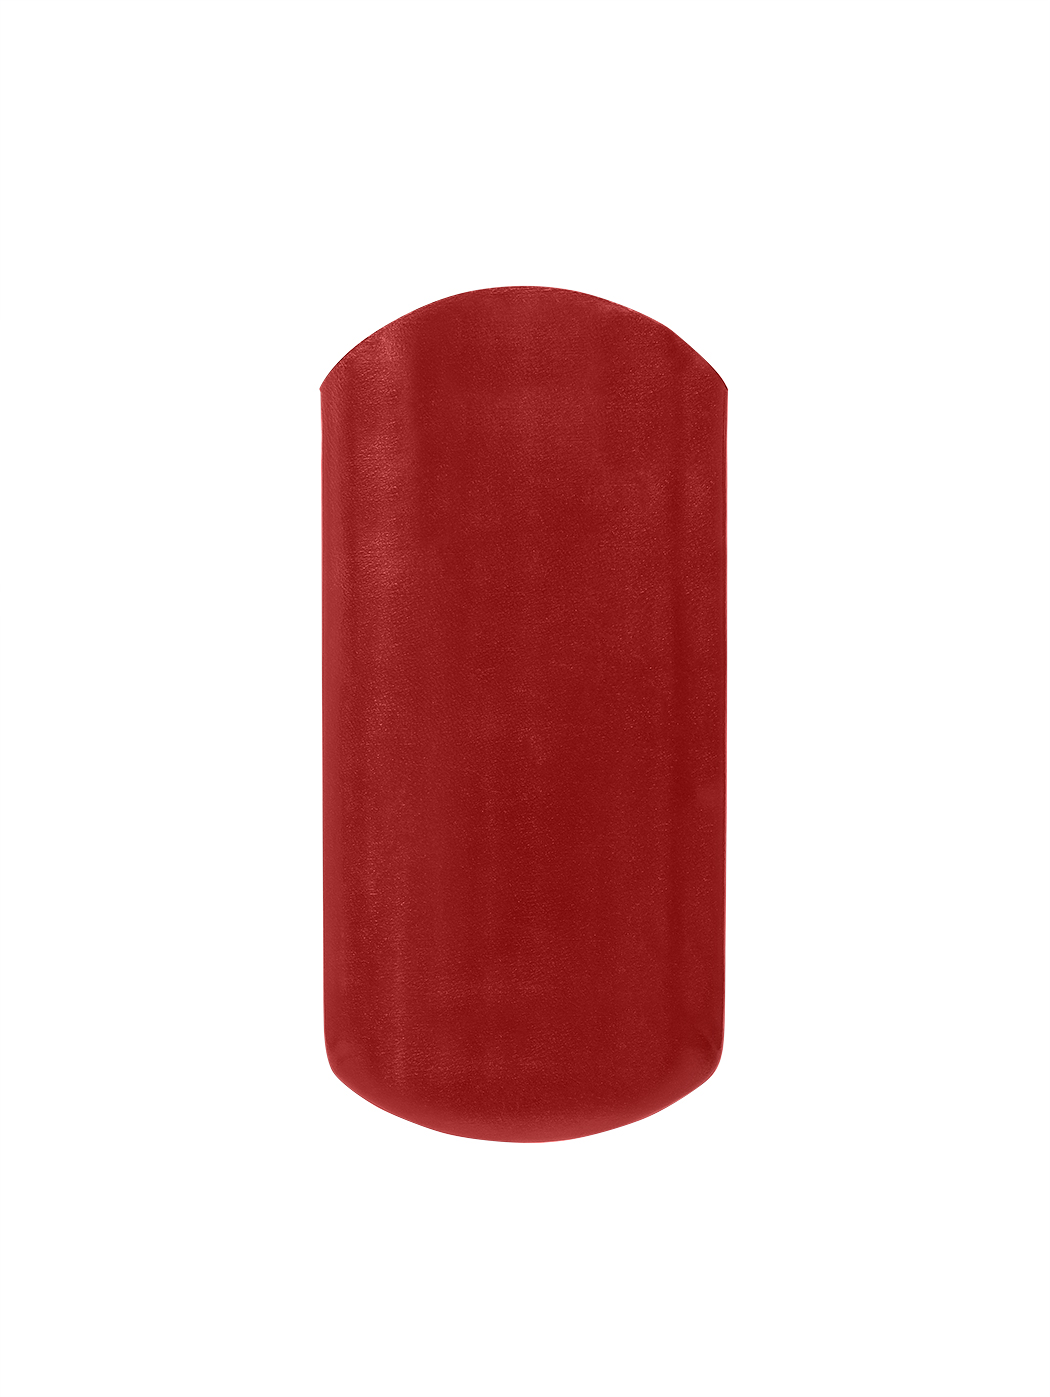 Кожаный футляр для очков ручной работы красного цвета